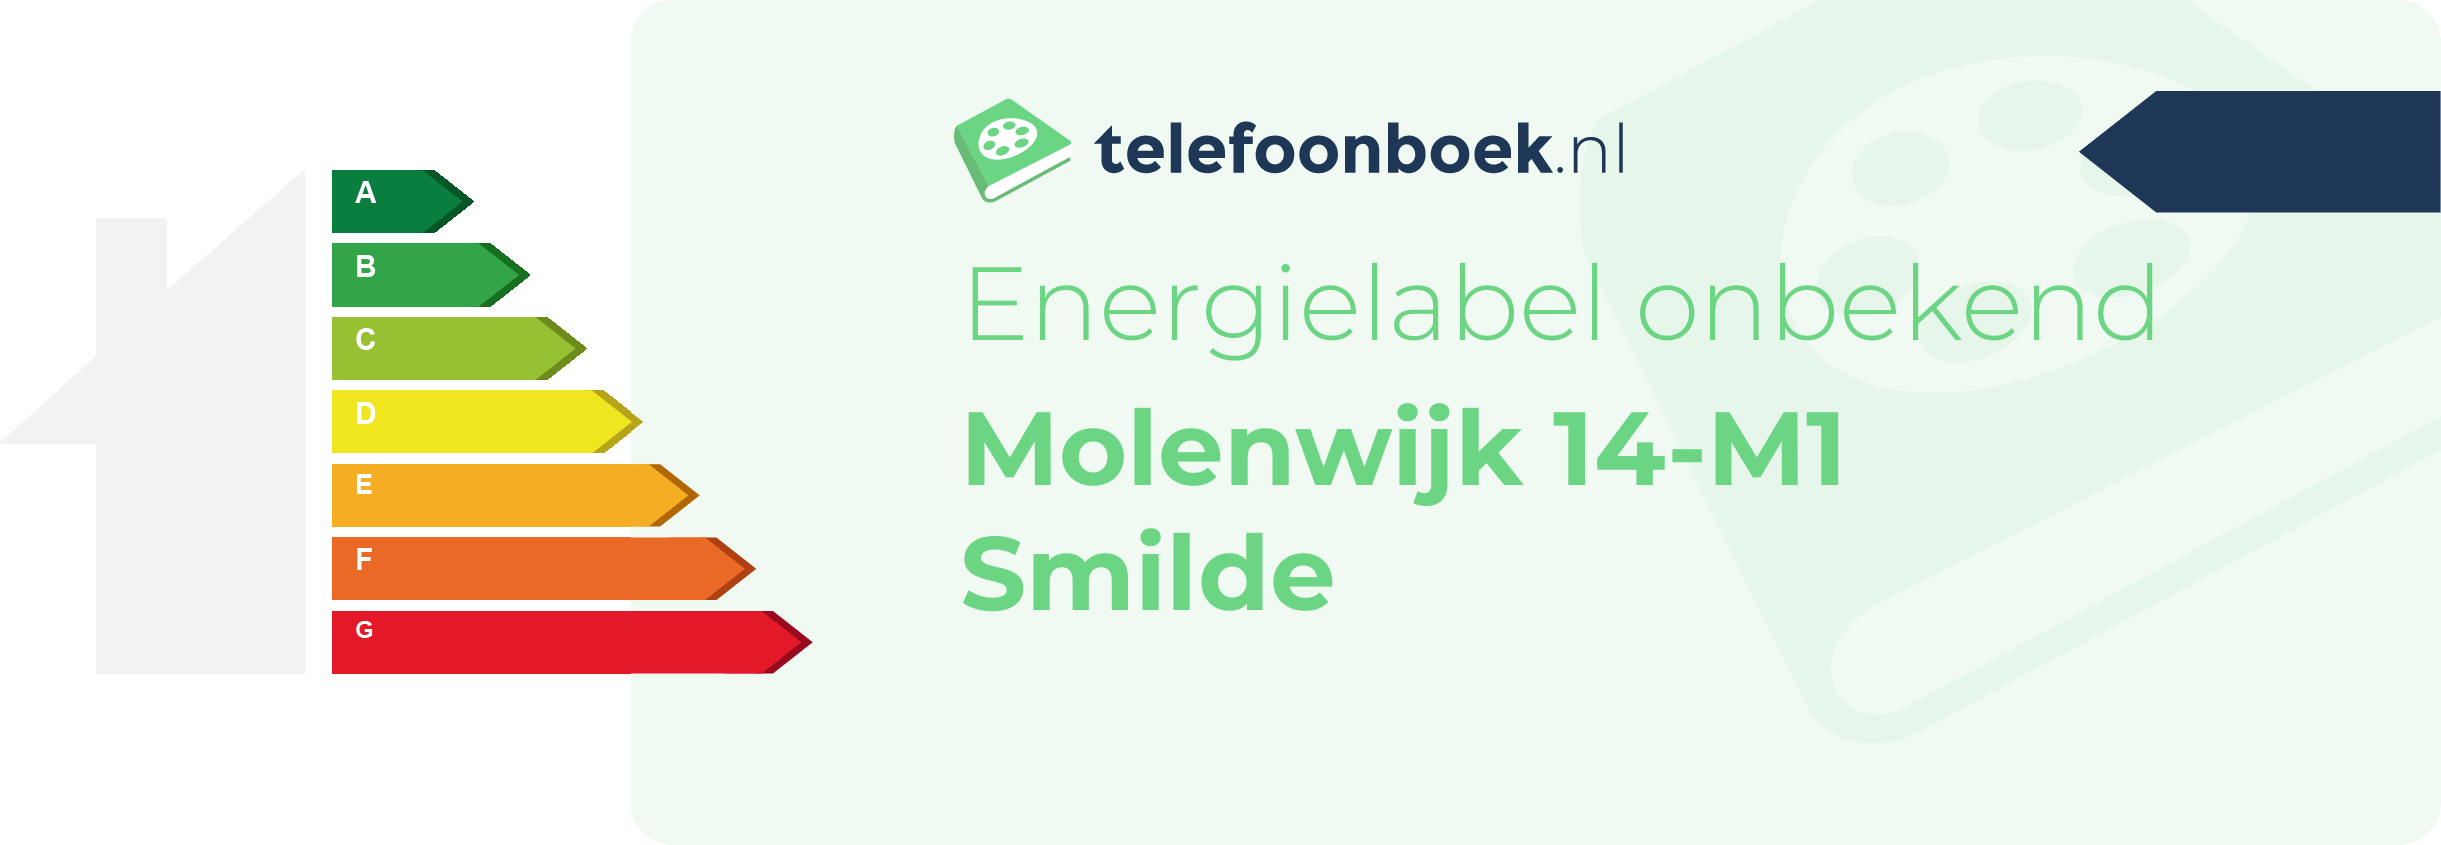 Energielabel Molenwijk 14-M1 Smilde